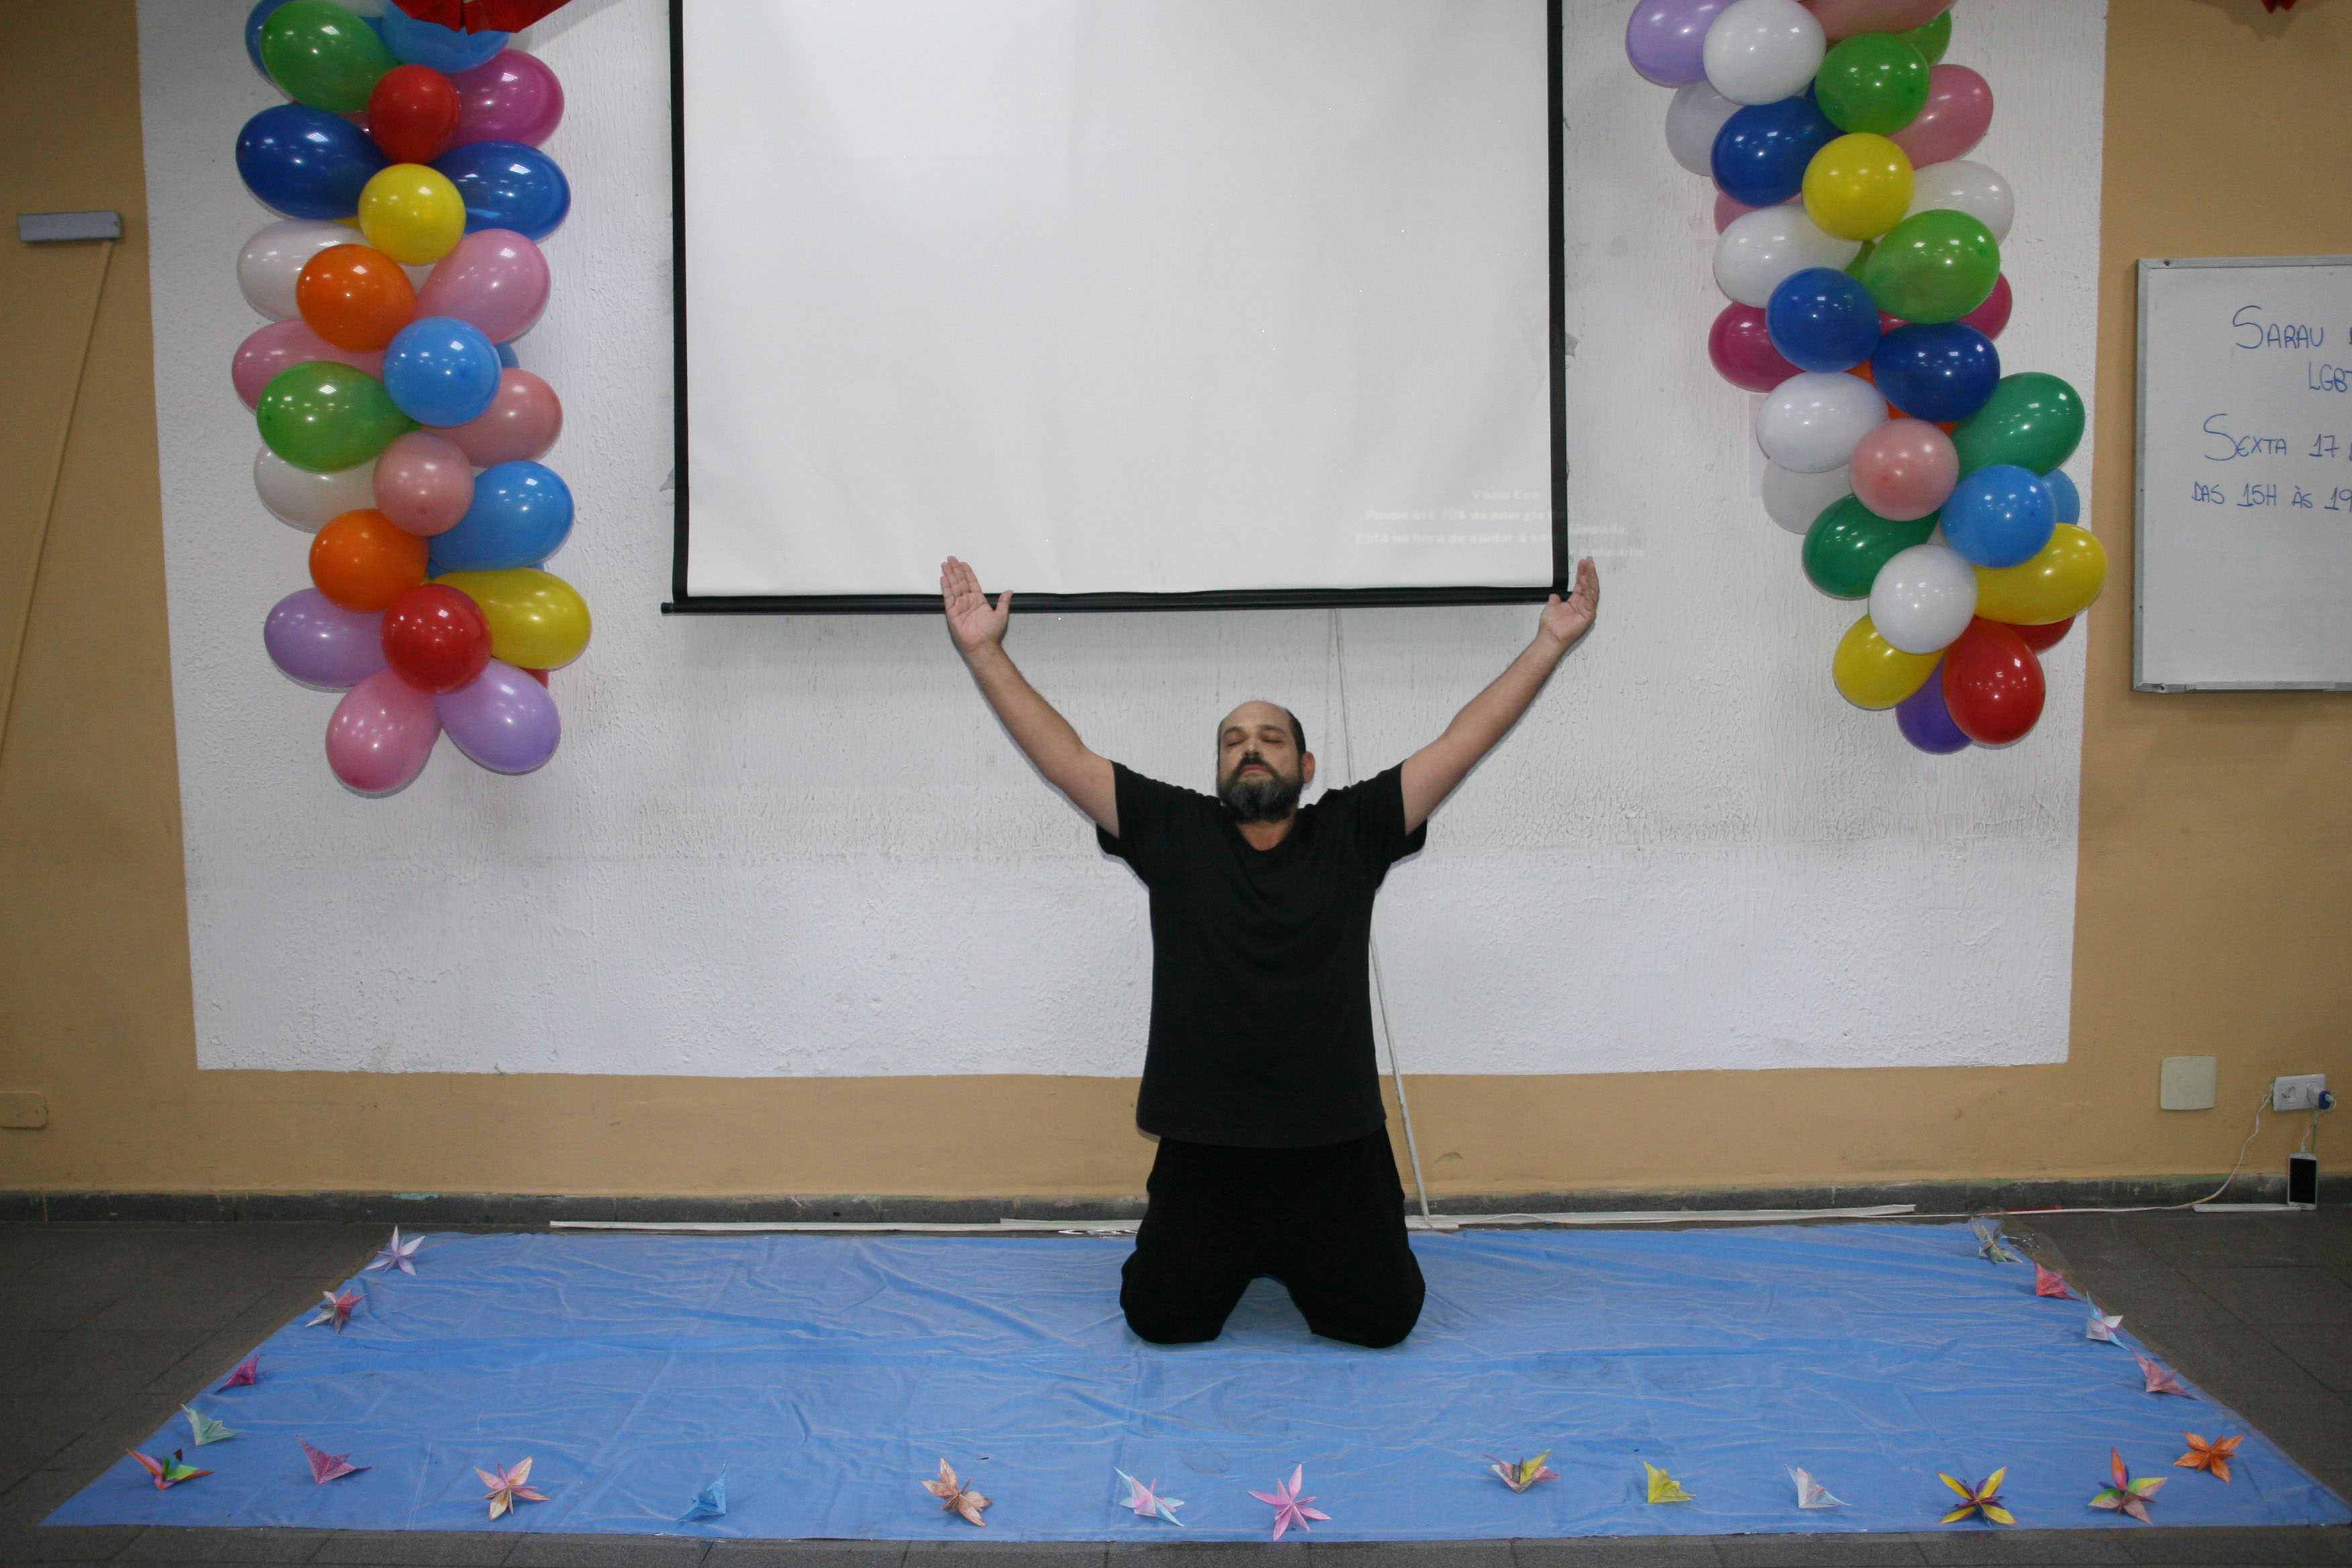 Convivente vestido de preto está com os joelhos no chão e braços para o alto em apresentação artística na sala do serviço com balões coloridos e um telão de projeção na parede ao fundo